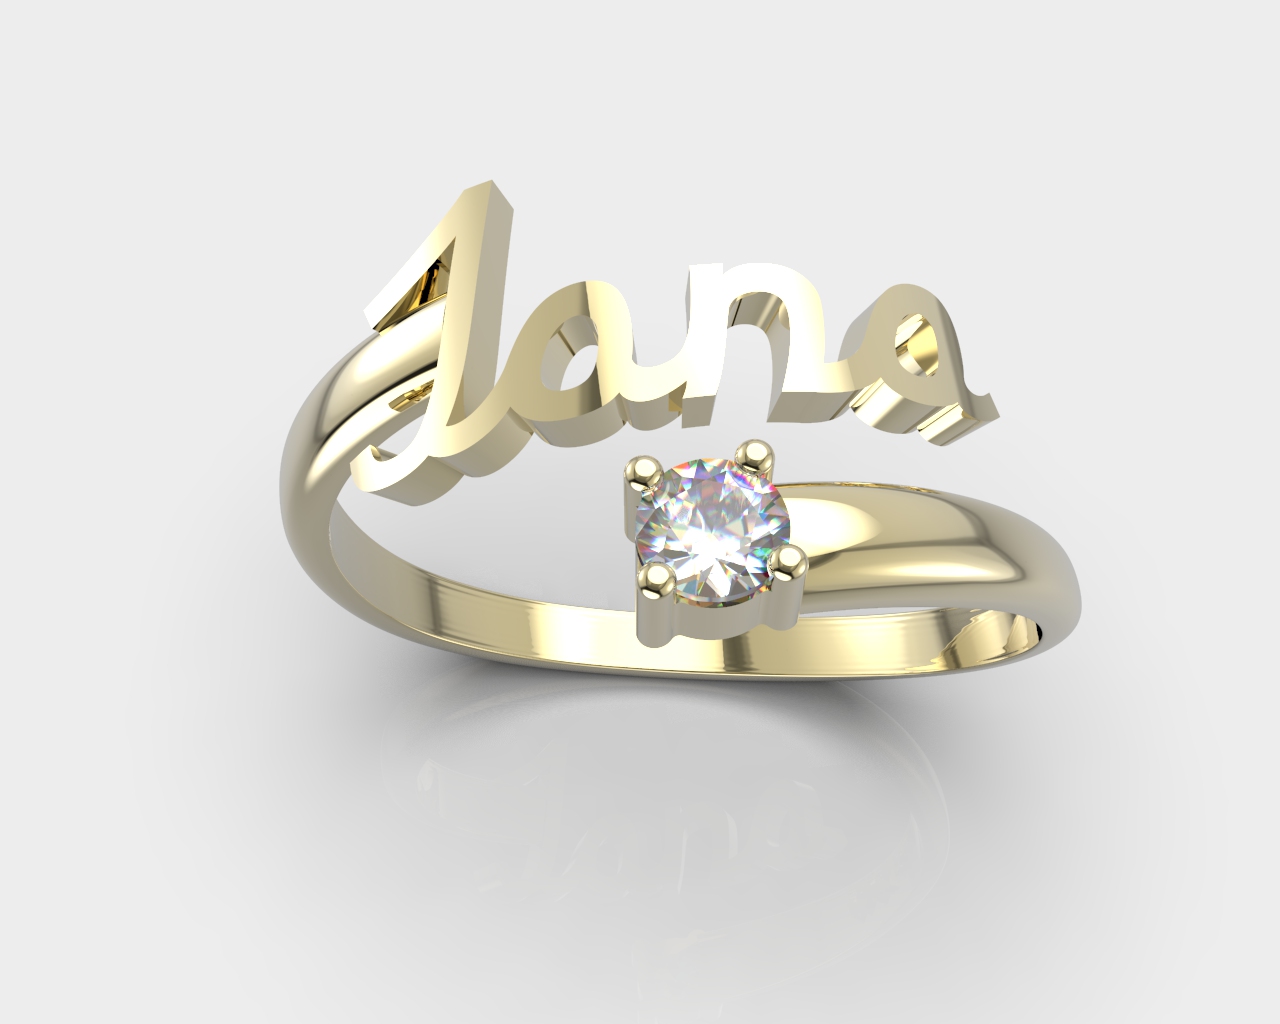 Aranys Zlatý prsten se jménem a minerálem, Diamant, Zlato Au 585/1000 56366